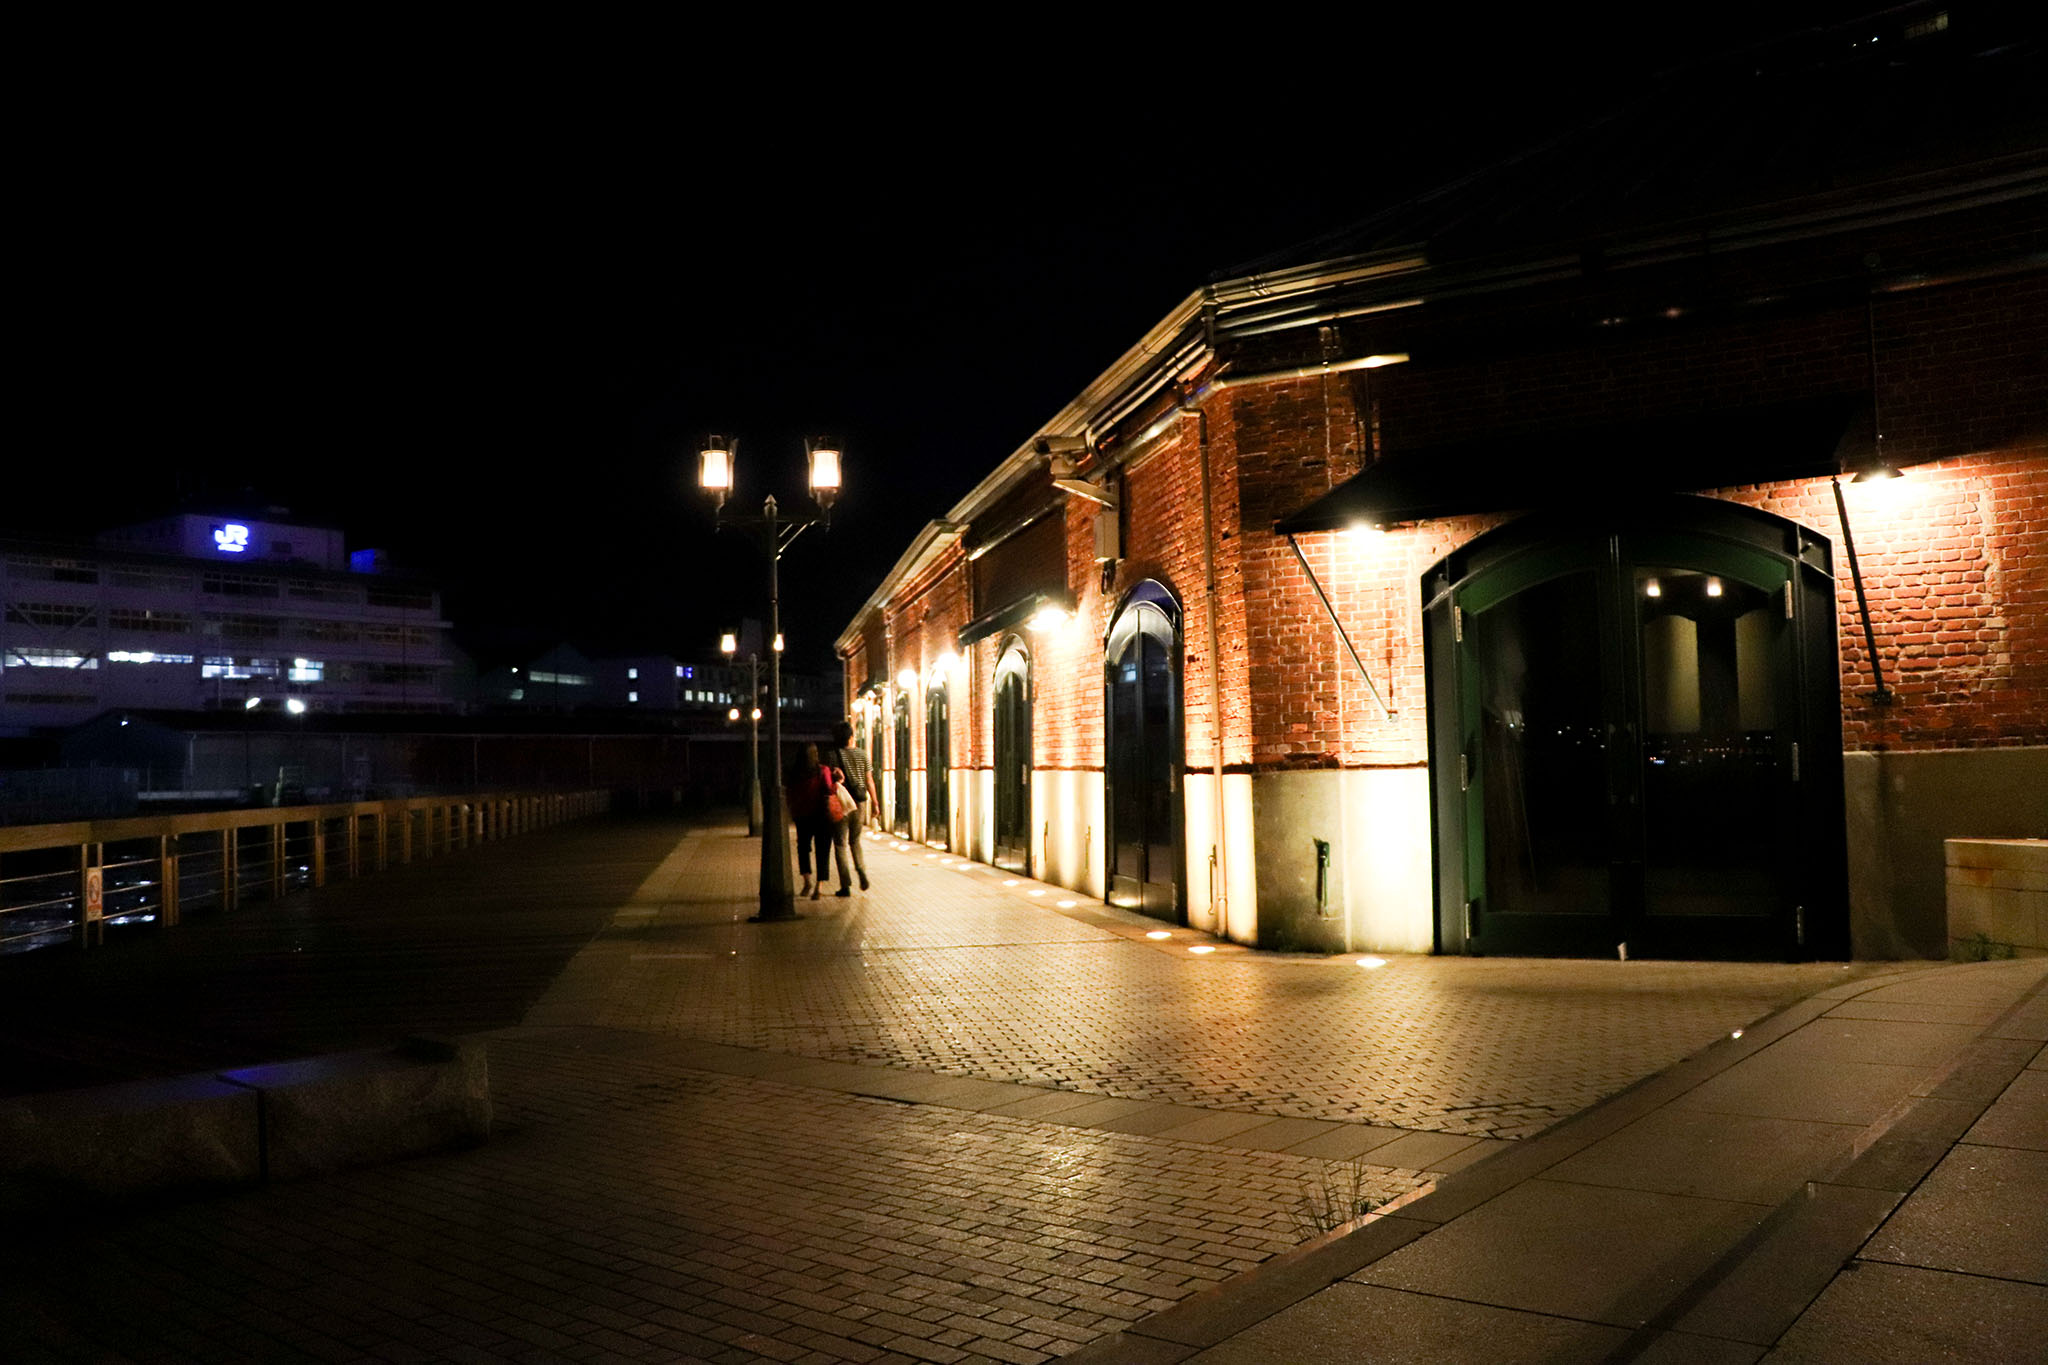 ハーバーランド 夜の神戸煉瓦倉庫を歩く2人 フリー 無料 写真素材 ダウンロード Blue Green